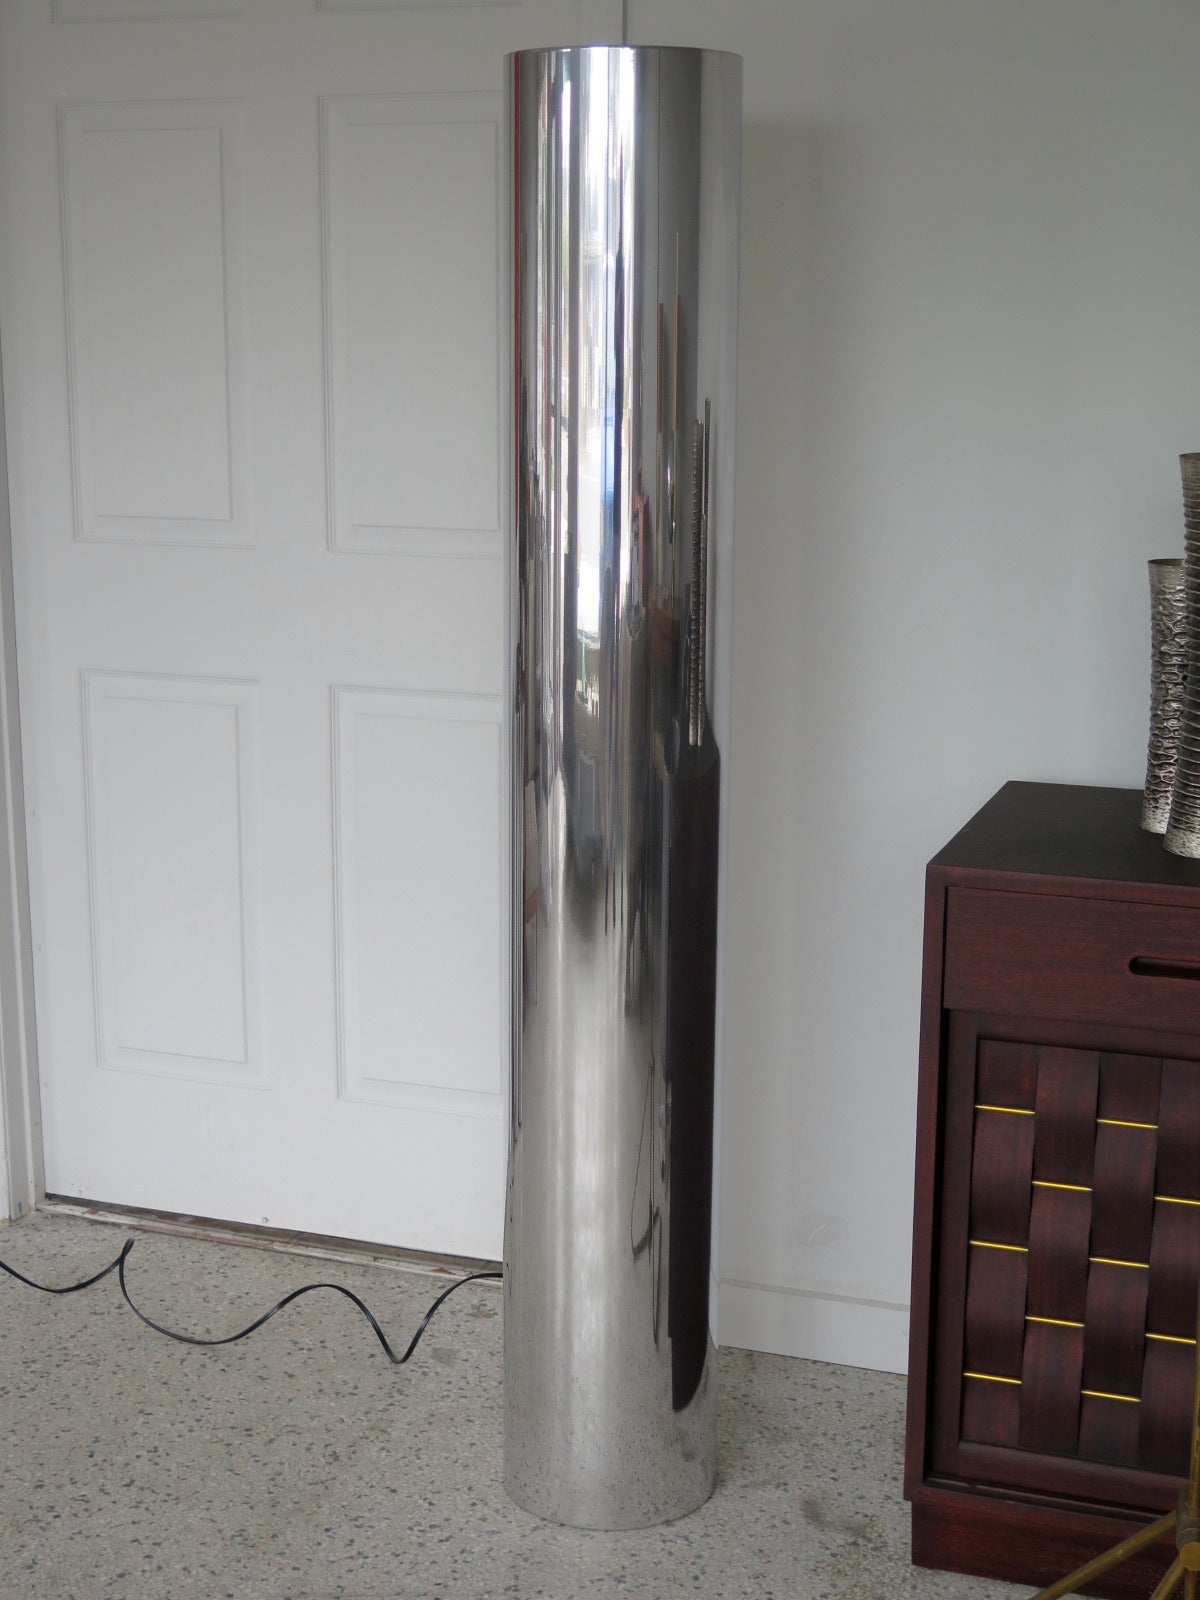 Une lampe tubulaire inhabituelle en aluminium poli, vers les années 1970.